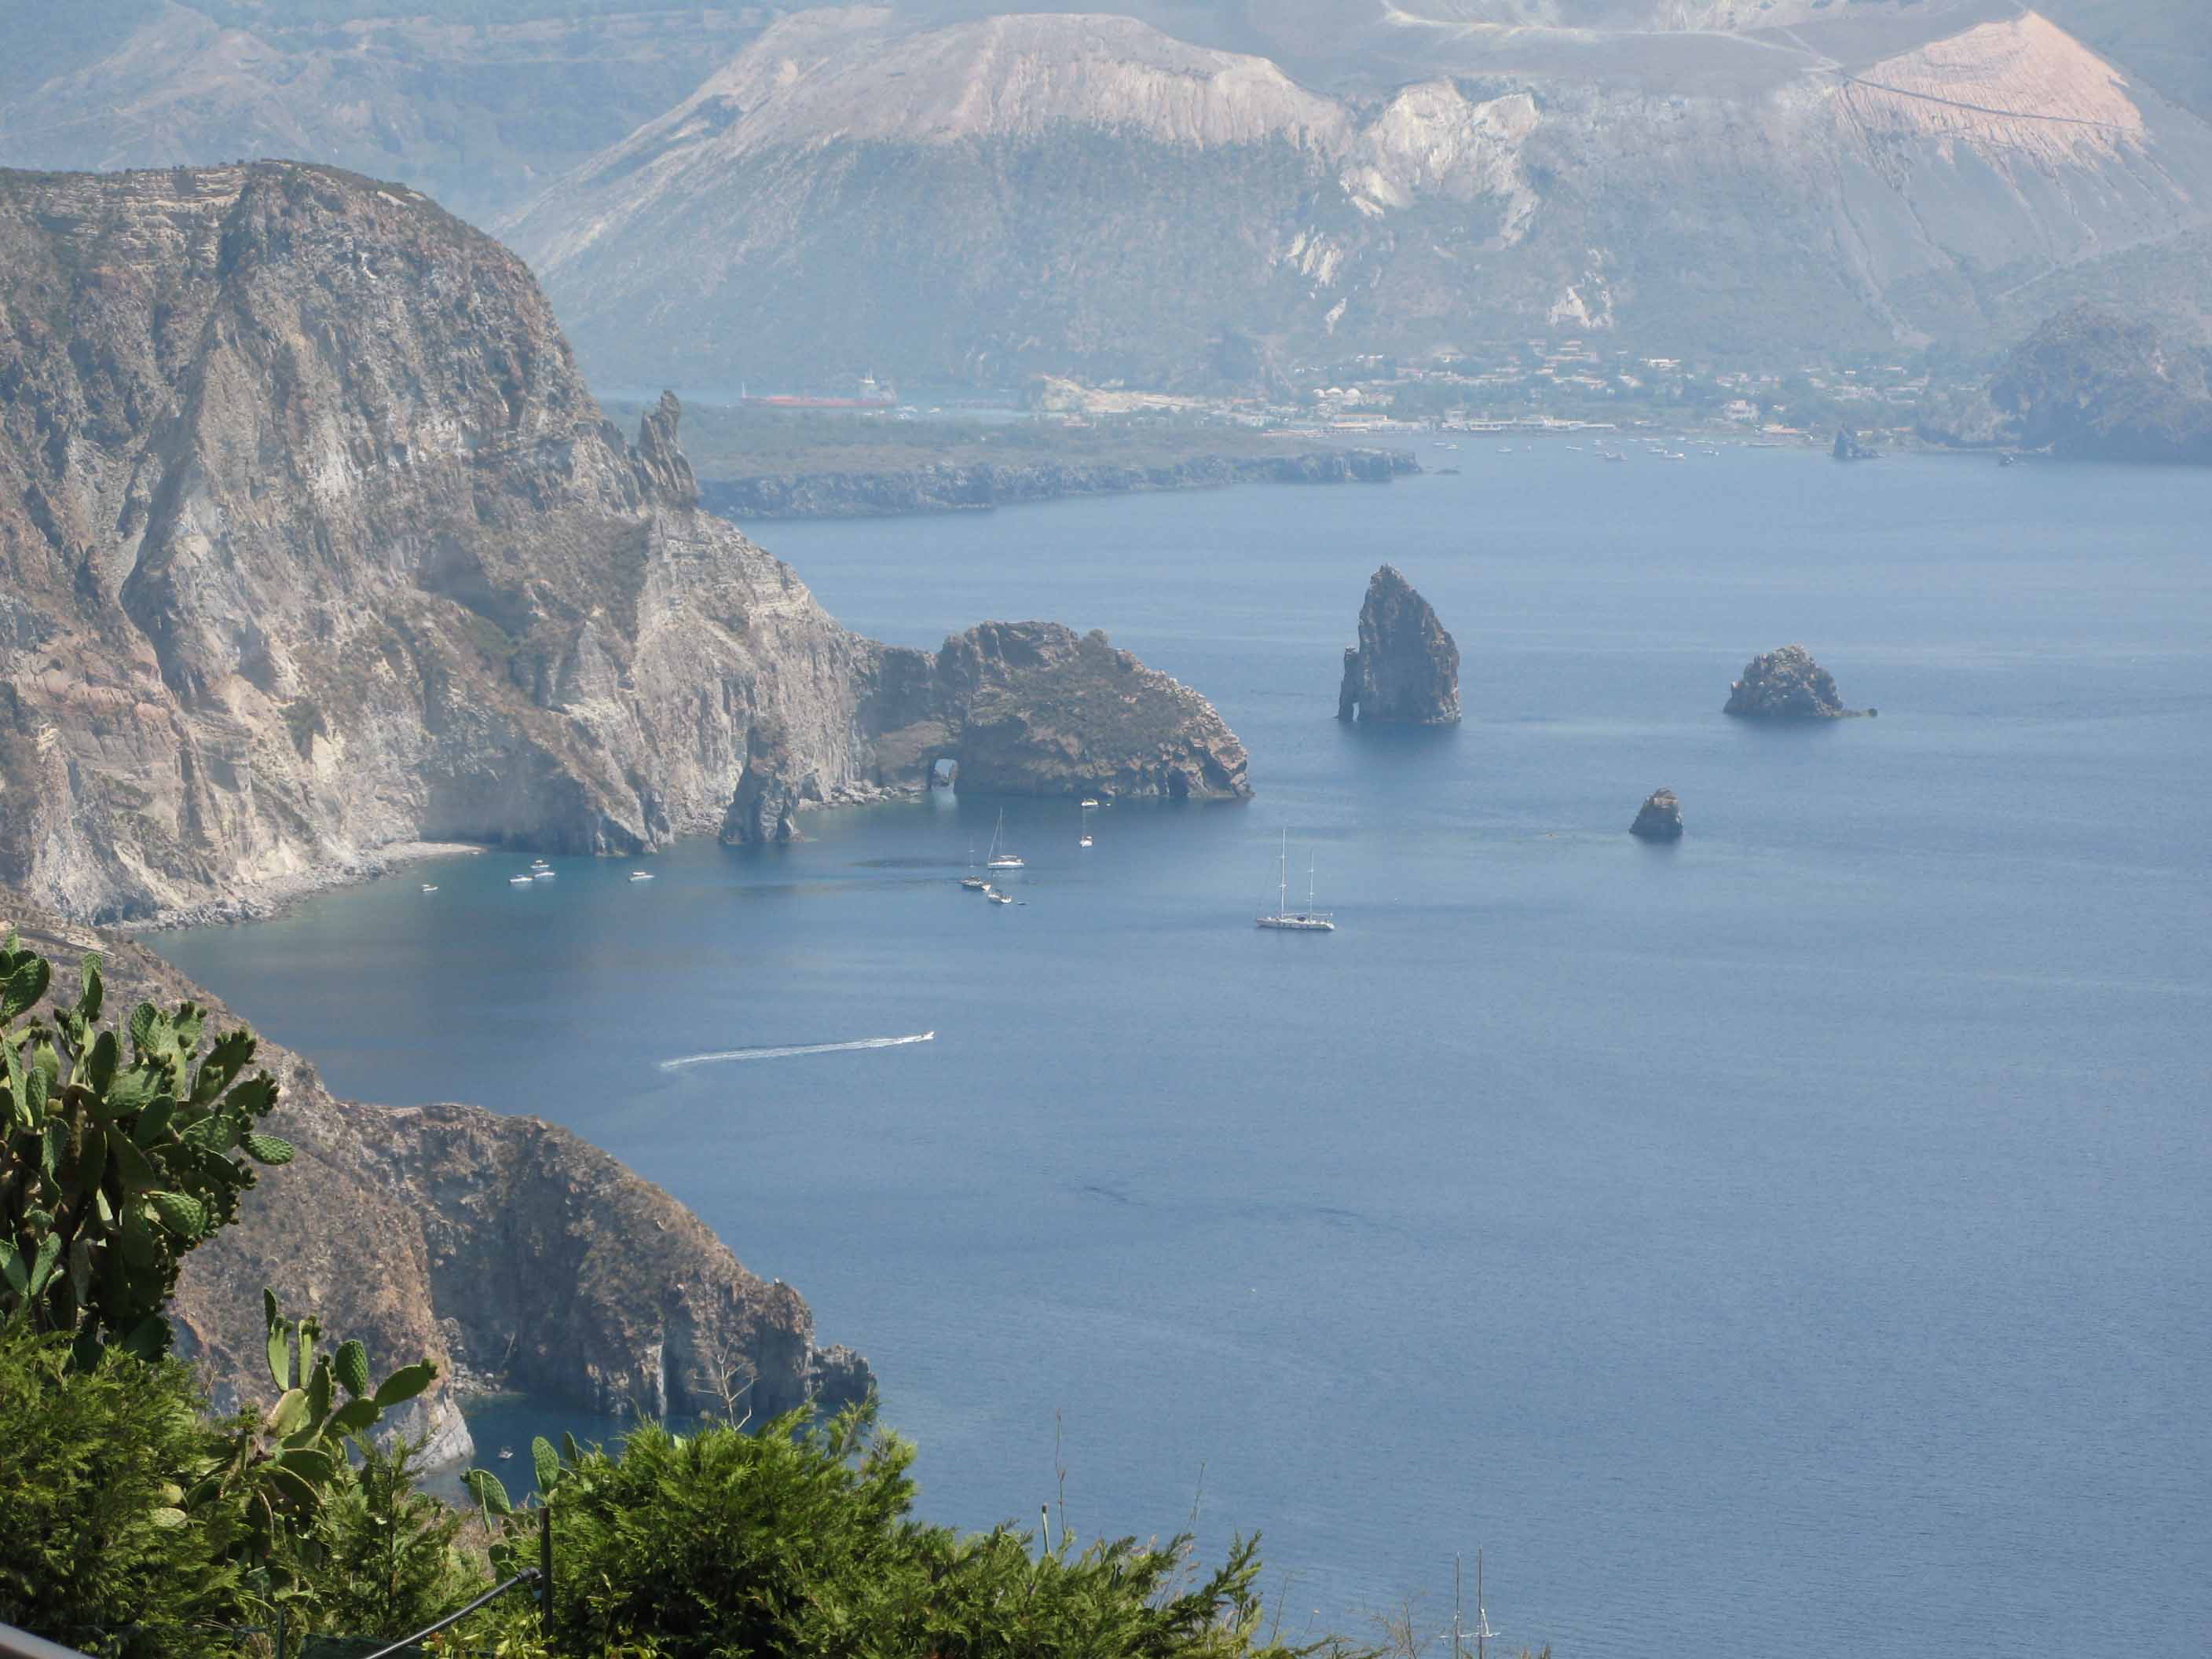 SegeltÃ¶rn in den Liparischen Inseln, Tyrrhenisches Meer, Italien; Tagesausflug mit MotorrÃ¤dern auf Lipari, im Hintergrund Volcano, Porto di Levante (l.) und Porto Ponente (r.)